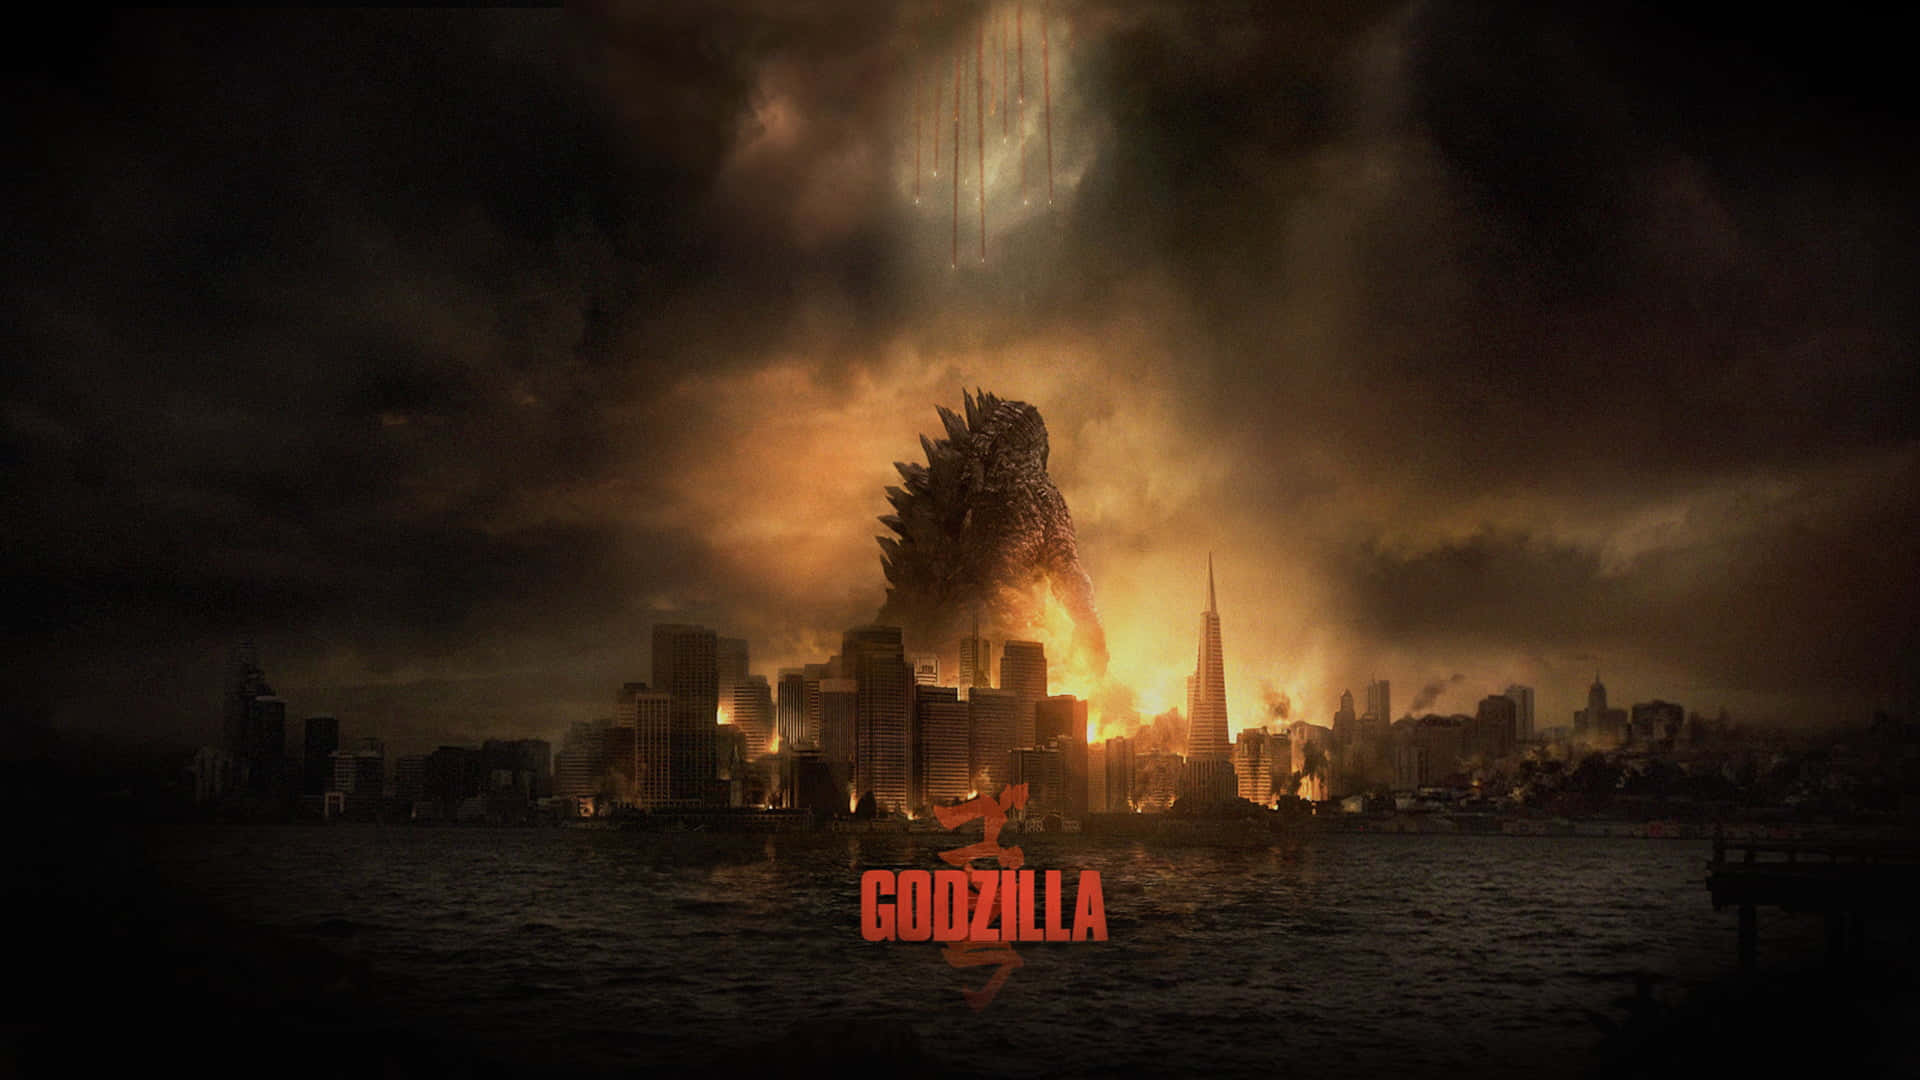 Godzilla Wreaking Havoc in a City Wallpaper